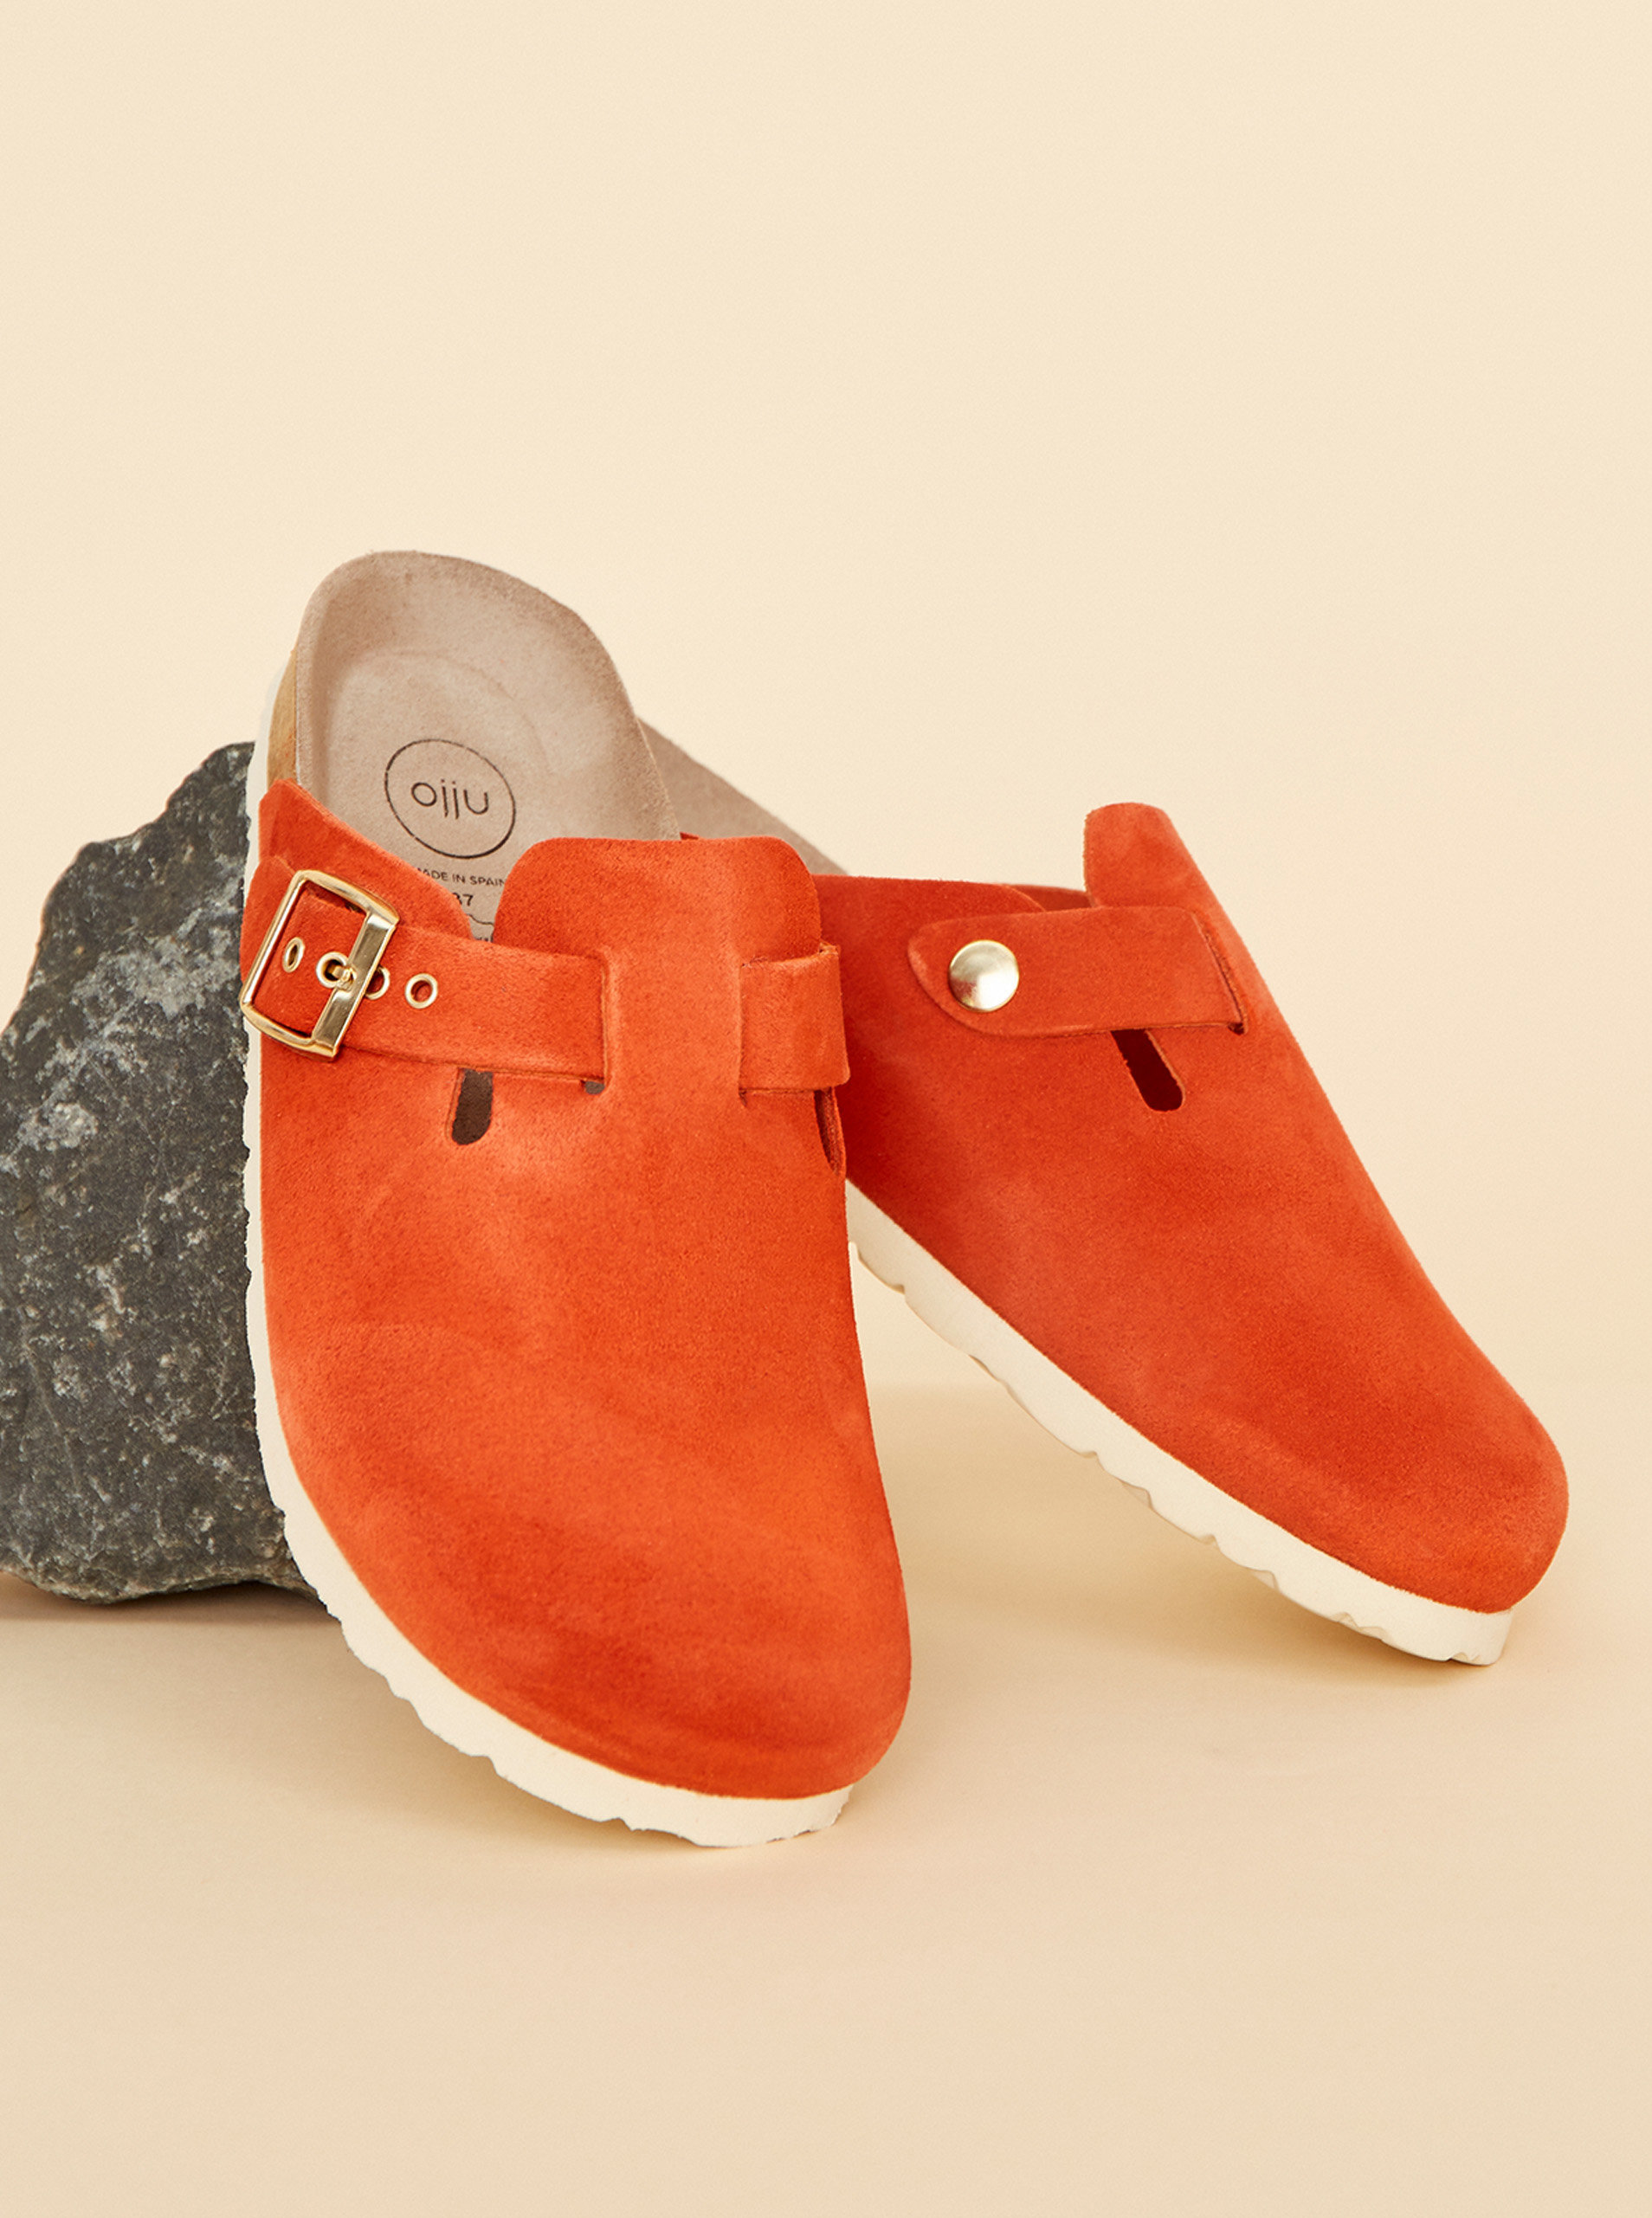 Fotografie Červené dámské semišové pantofle OJJU OJJU A22:1306479_180